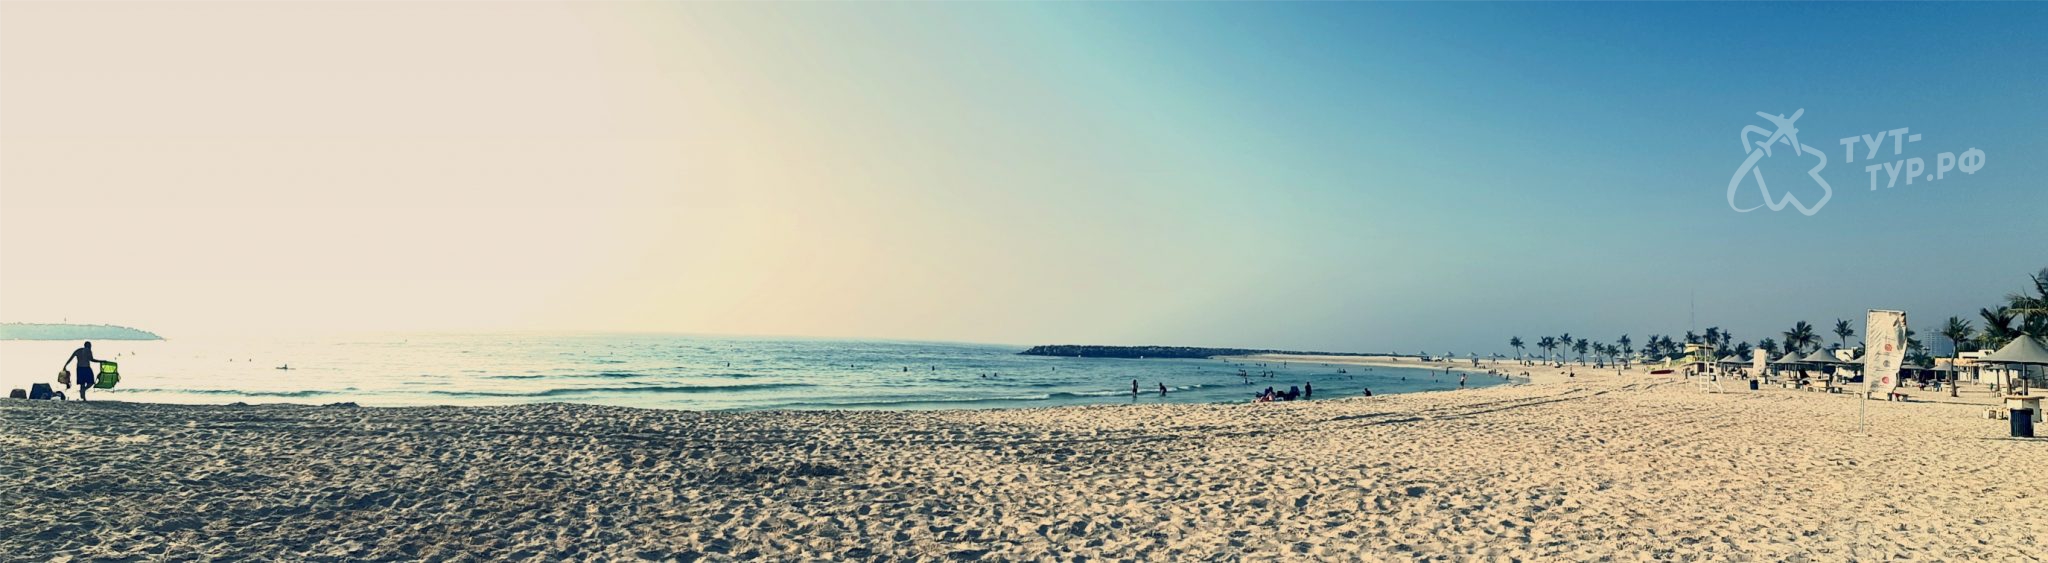 Панорамный вид на пляж в комплексе Al Mamzar